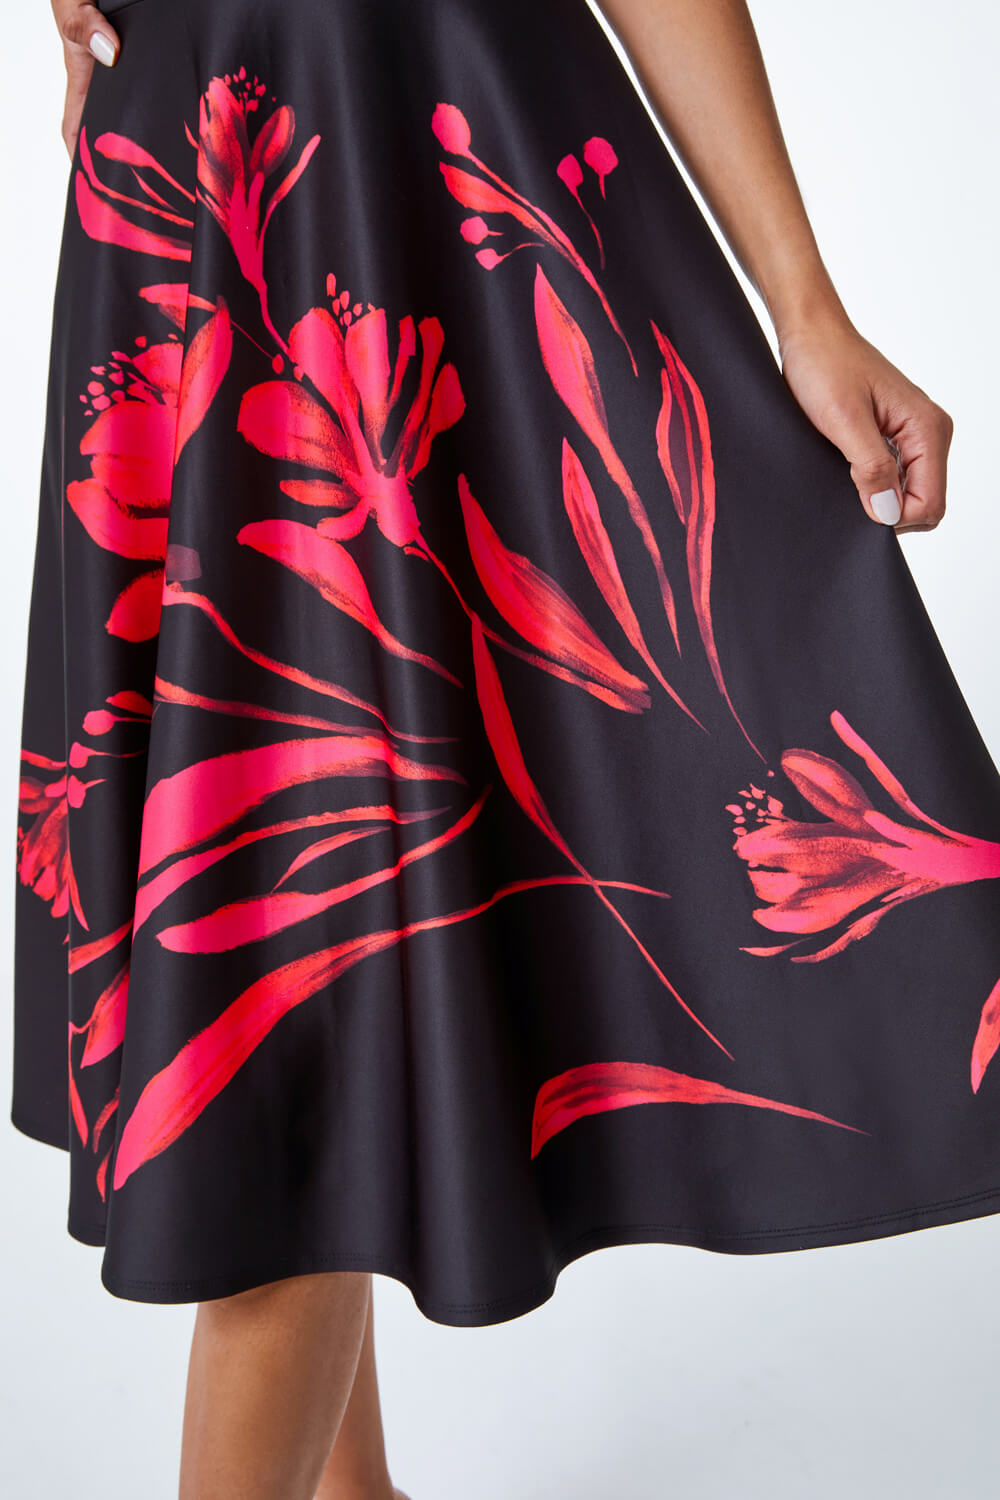 Black Floral Fit & Flare Bardot Dress, Image 5 of 5